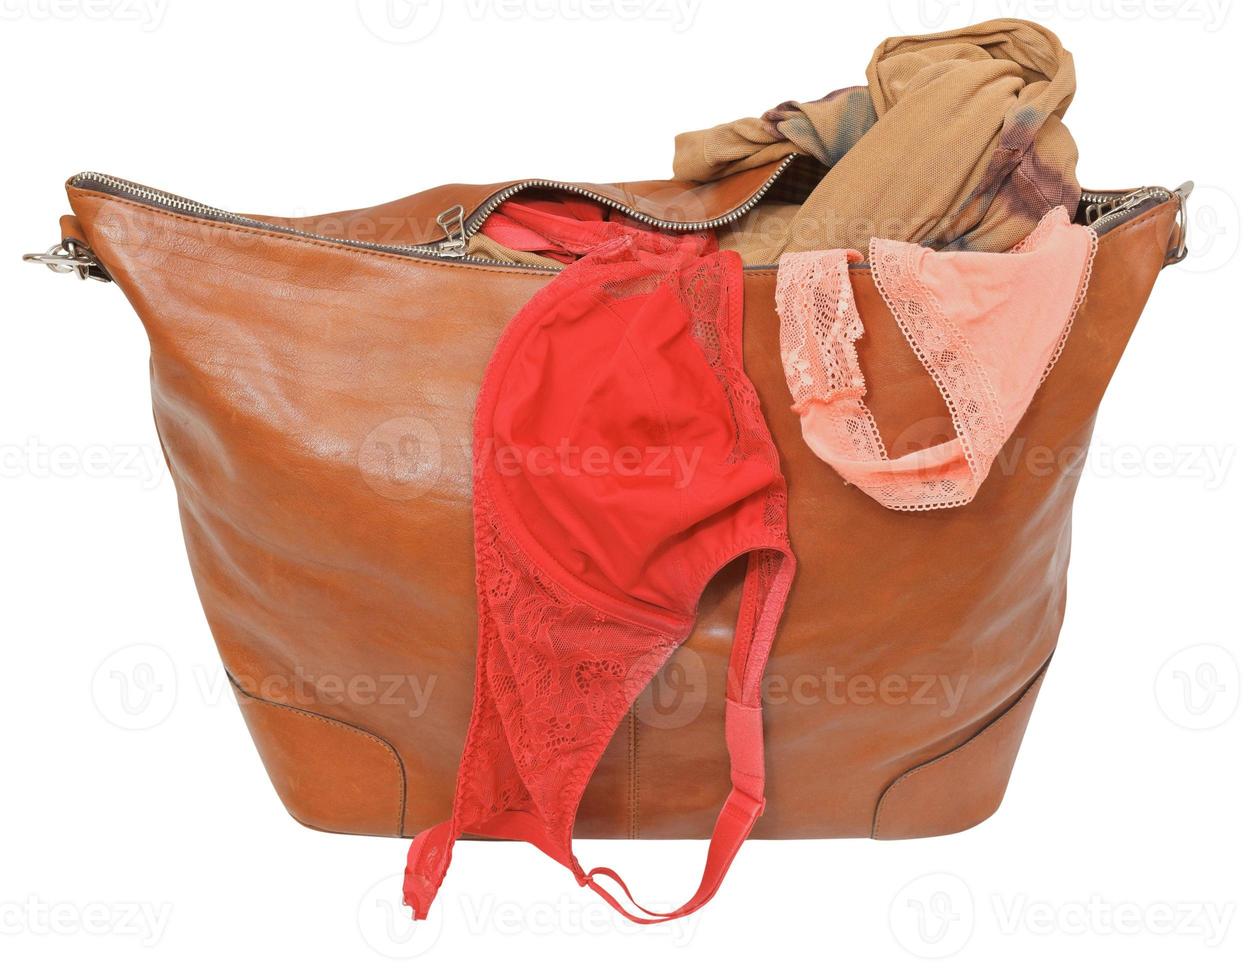 på glänt läder väska med behå och rosa spets trosor foto